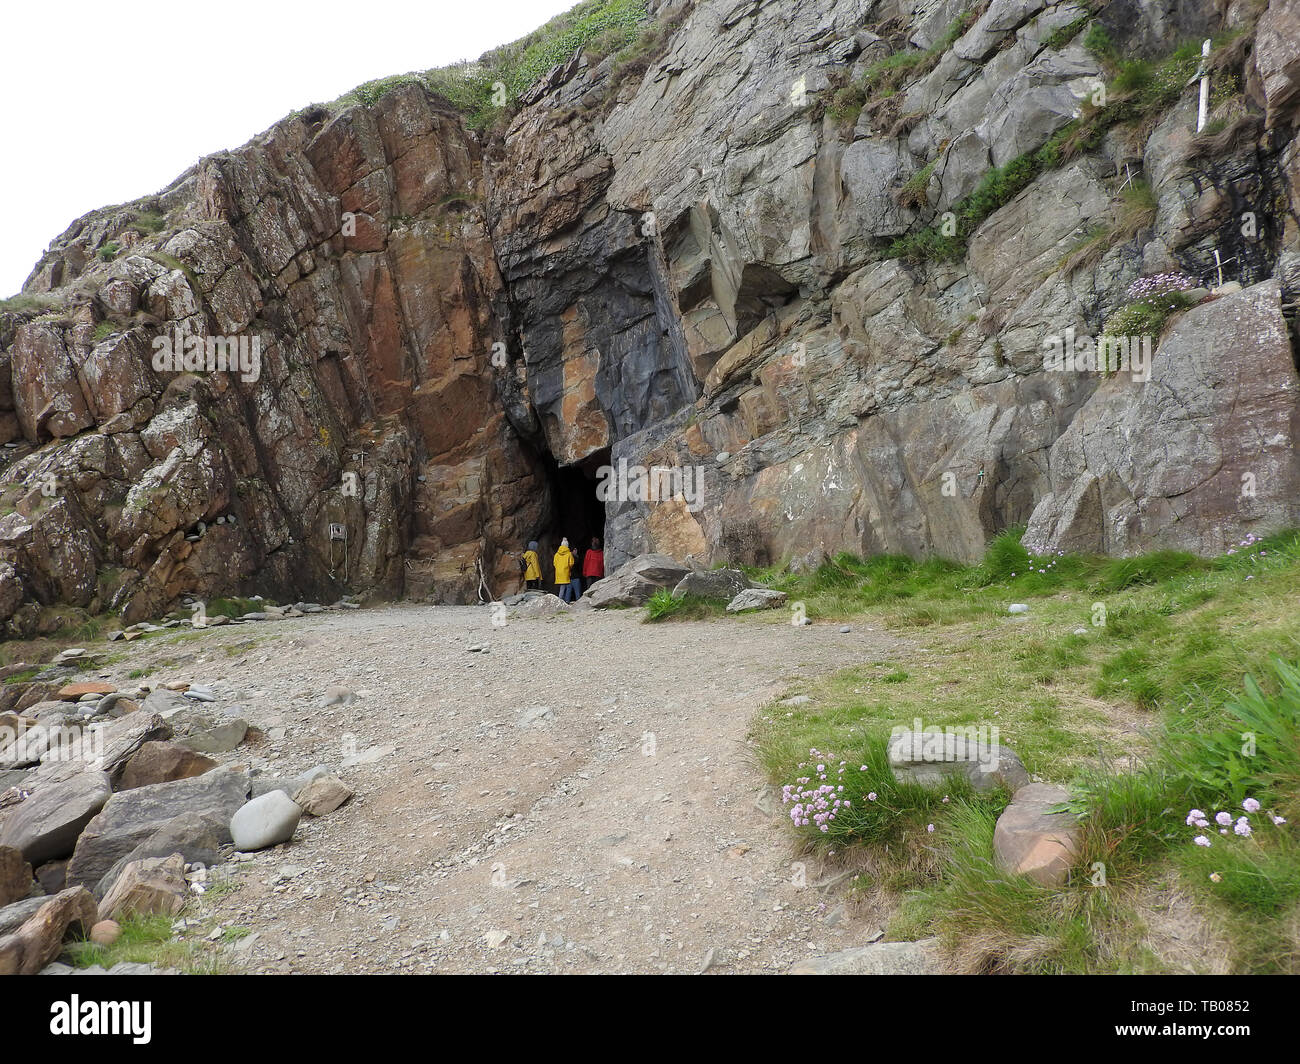 Besucher oder Pilger in Sankt Ninian's Cave, eine Pilgerstätte für Christen in der Nähe von Whithorn, Wigtownshire, Schottland (fotografiert 2019) Stockfoto